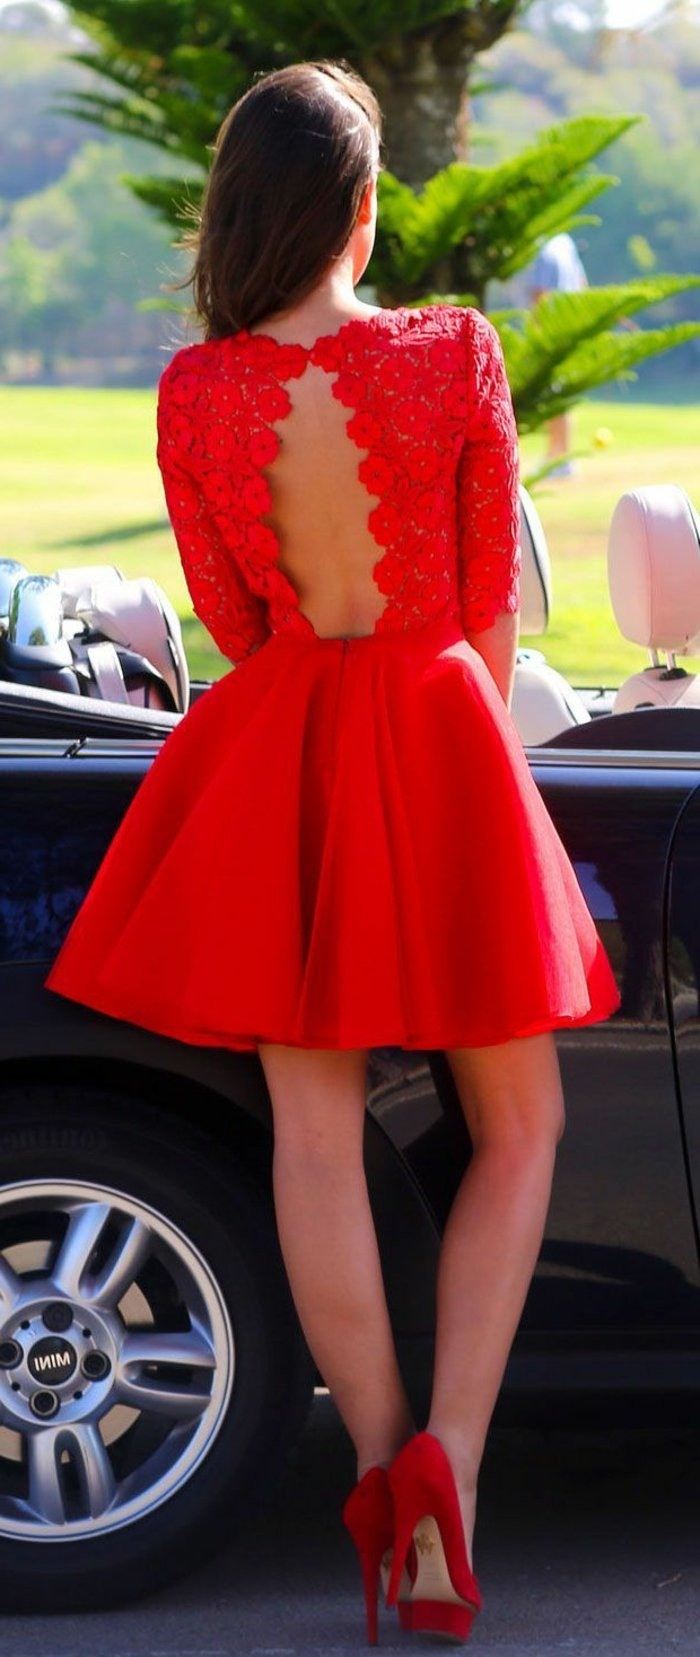 Formal Ausgezeichnet Kleid Rot Elegant Bester Preis13 Einzigartig Kleid Rot Elegant Ärmel